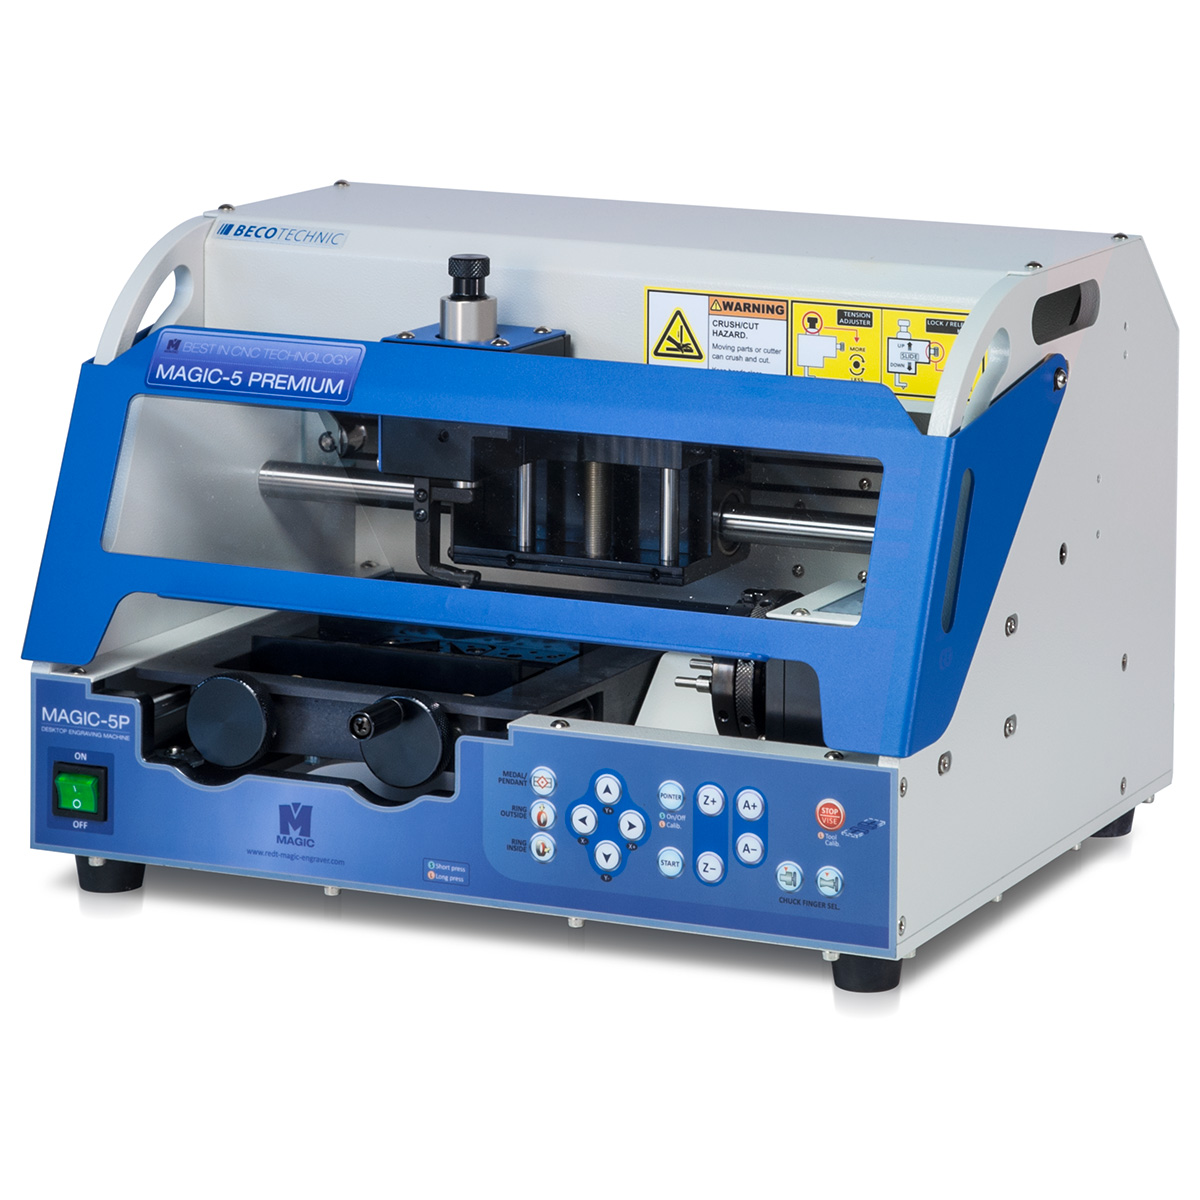 Dispositif CNC Magic-5Px pour la gravure d'anneaux et de plats